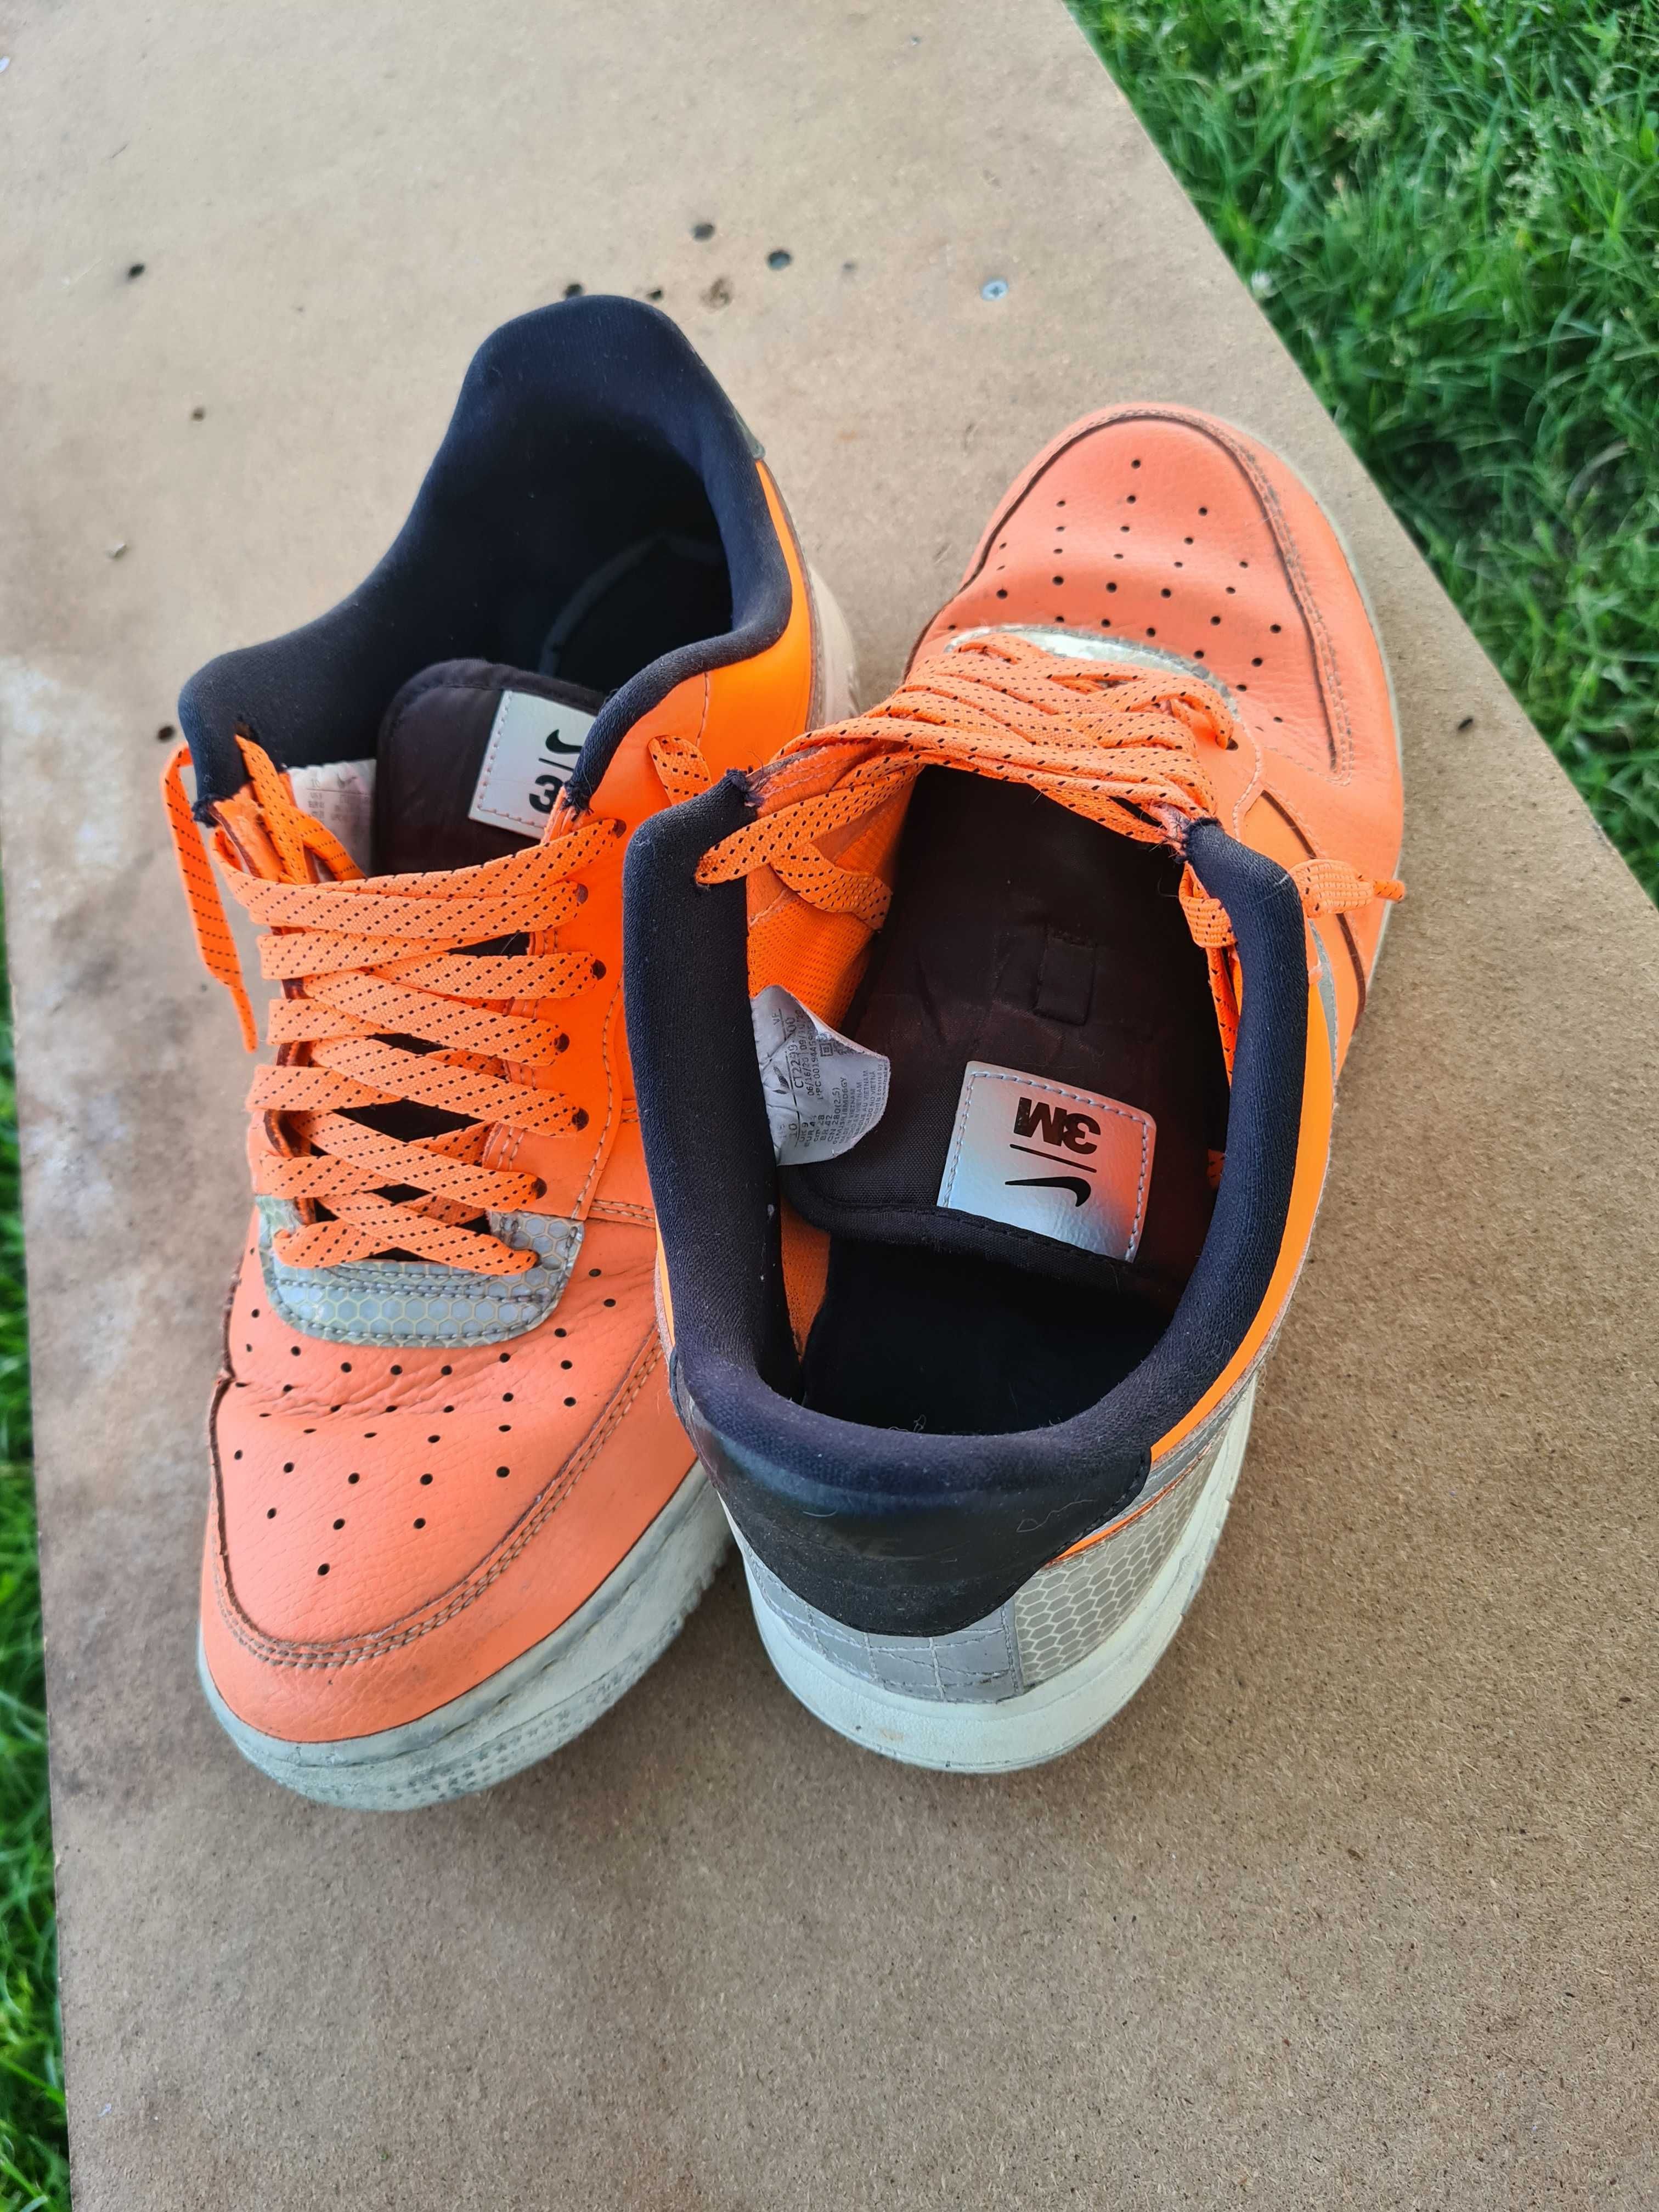 Nike af1 orange and black